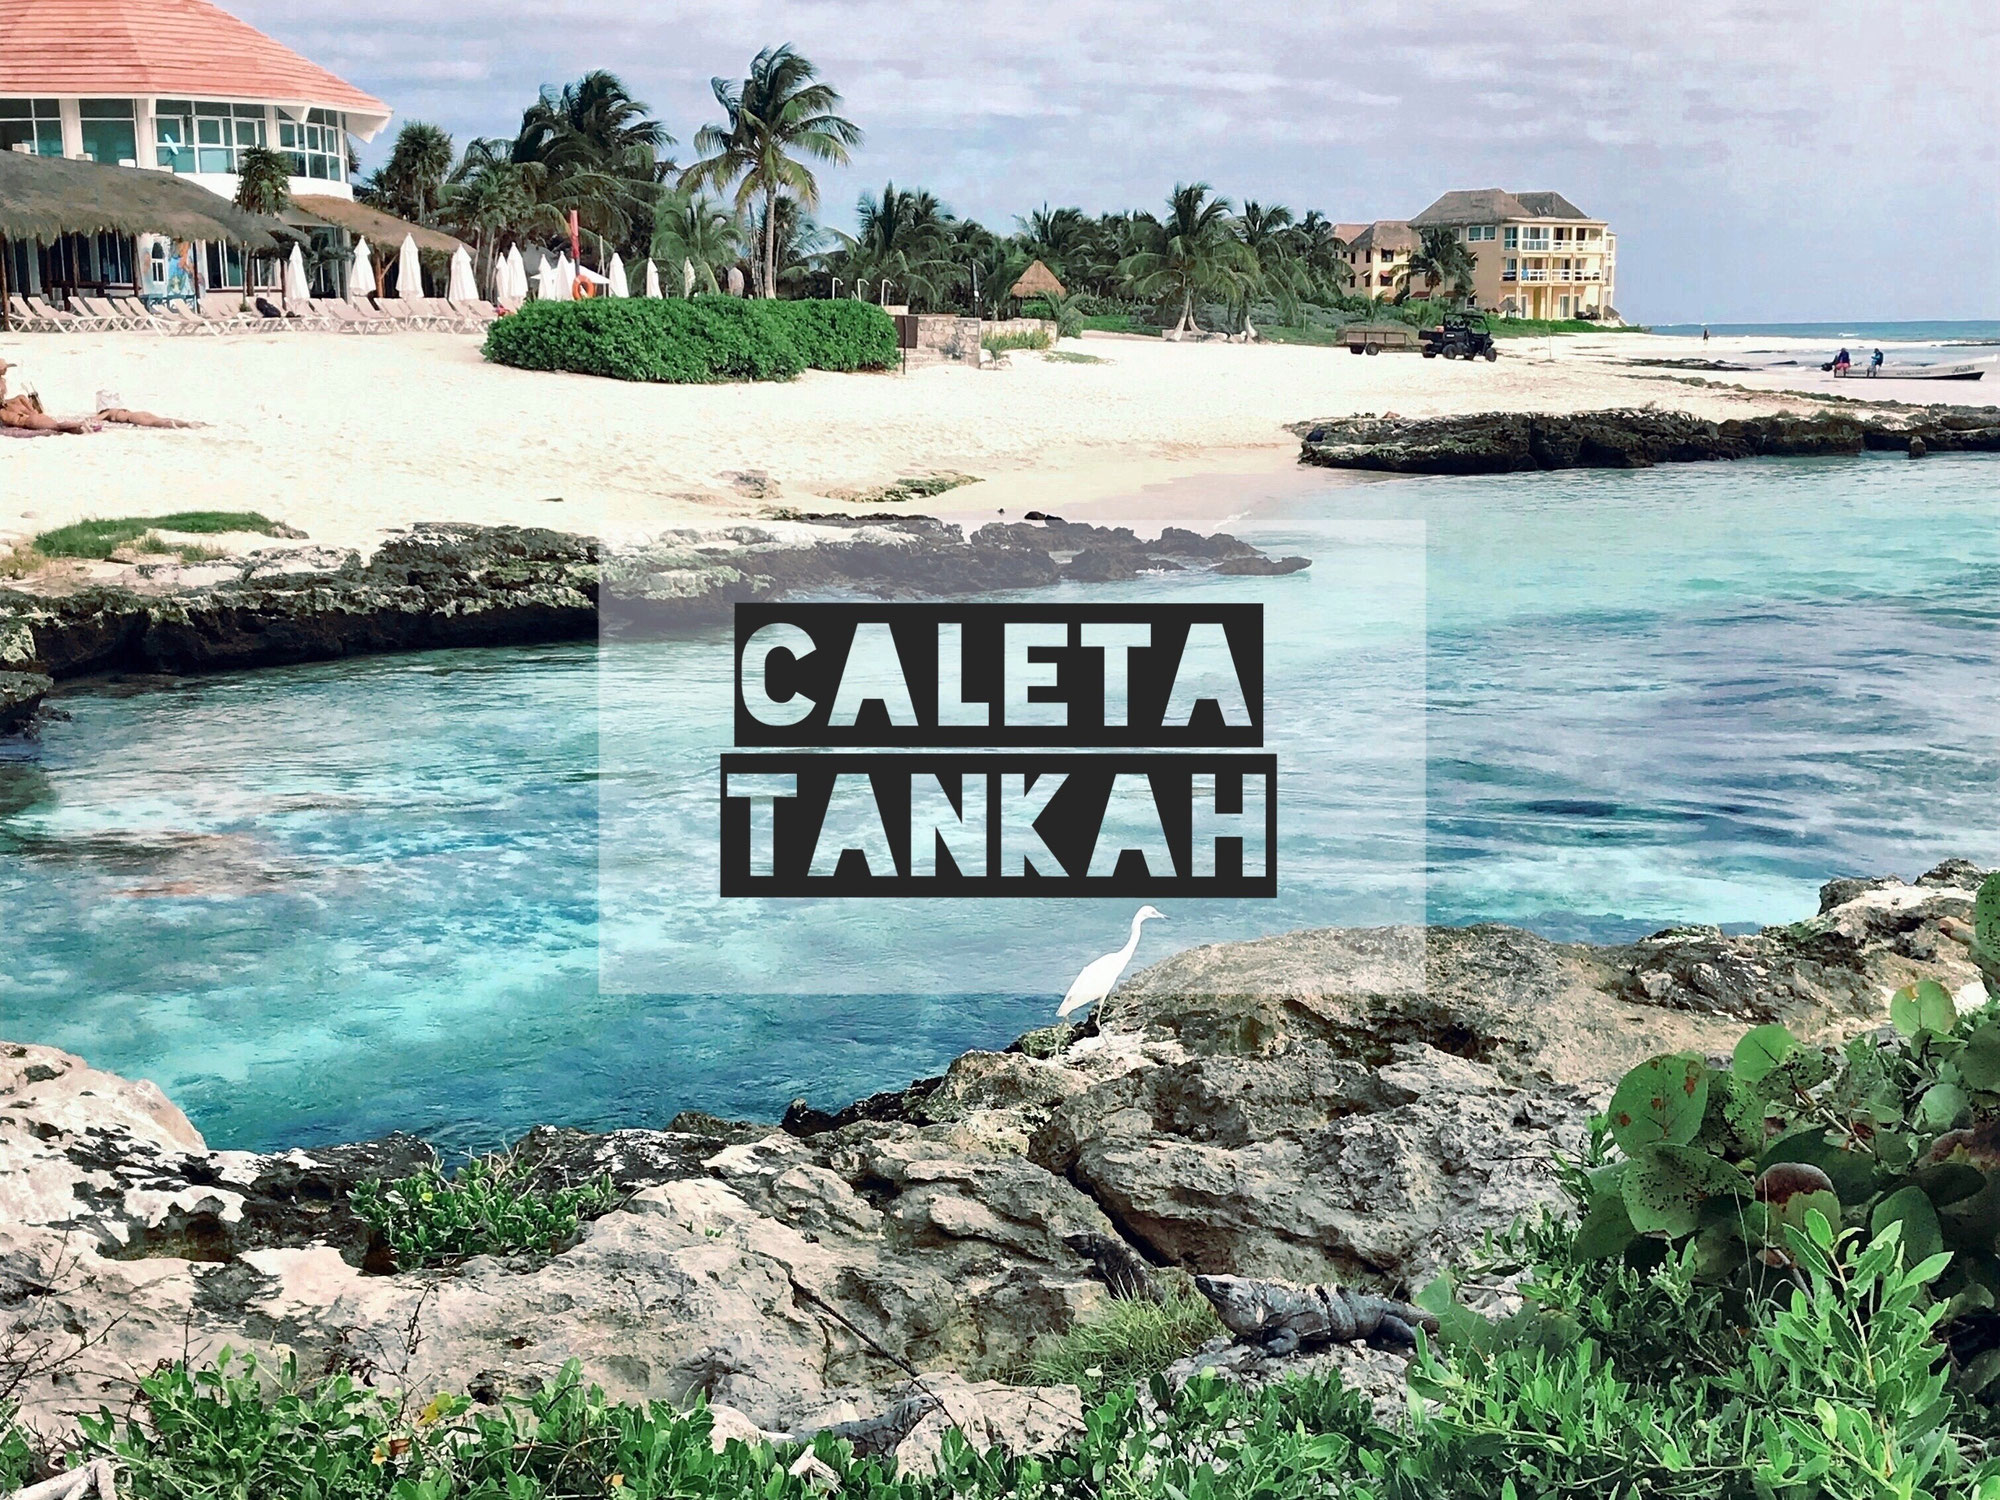 Caleta Tankah ☀ der schönste Beachclub für Familien - nur 6 km von Tulum!